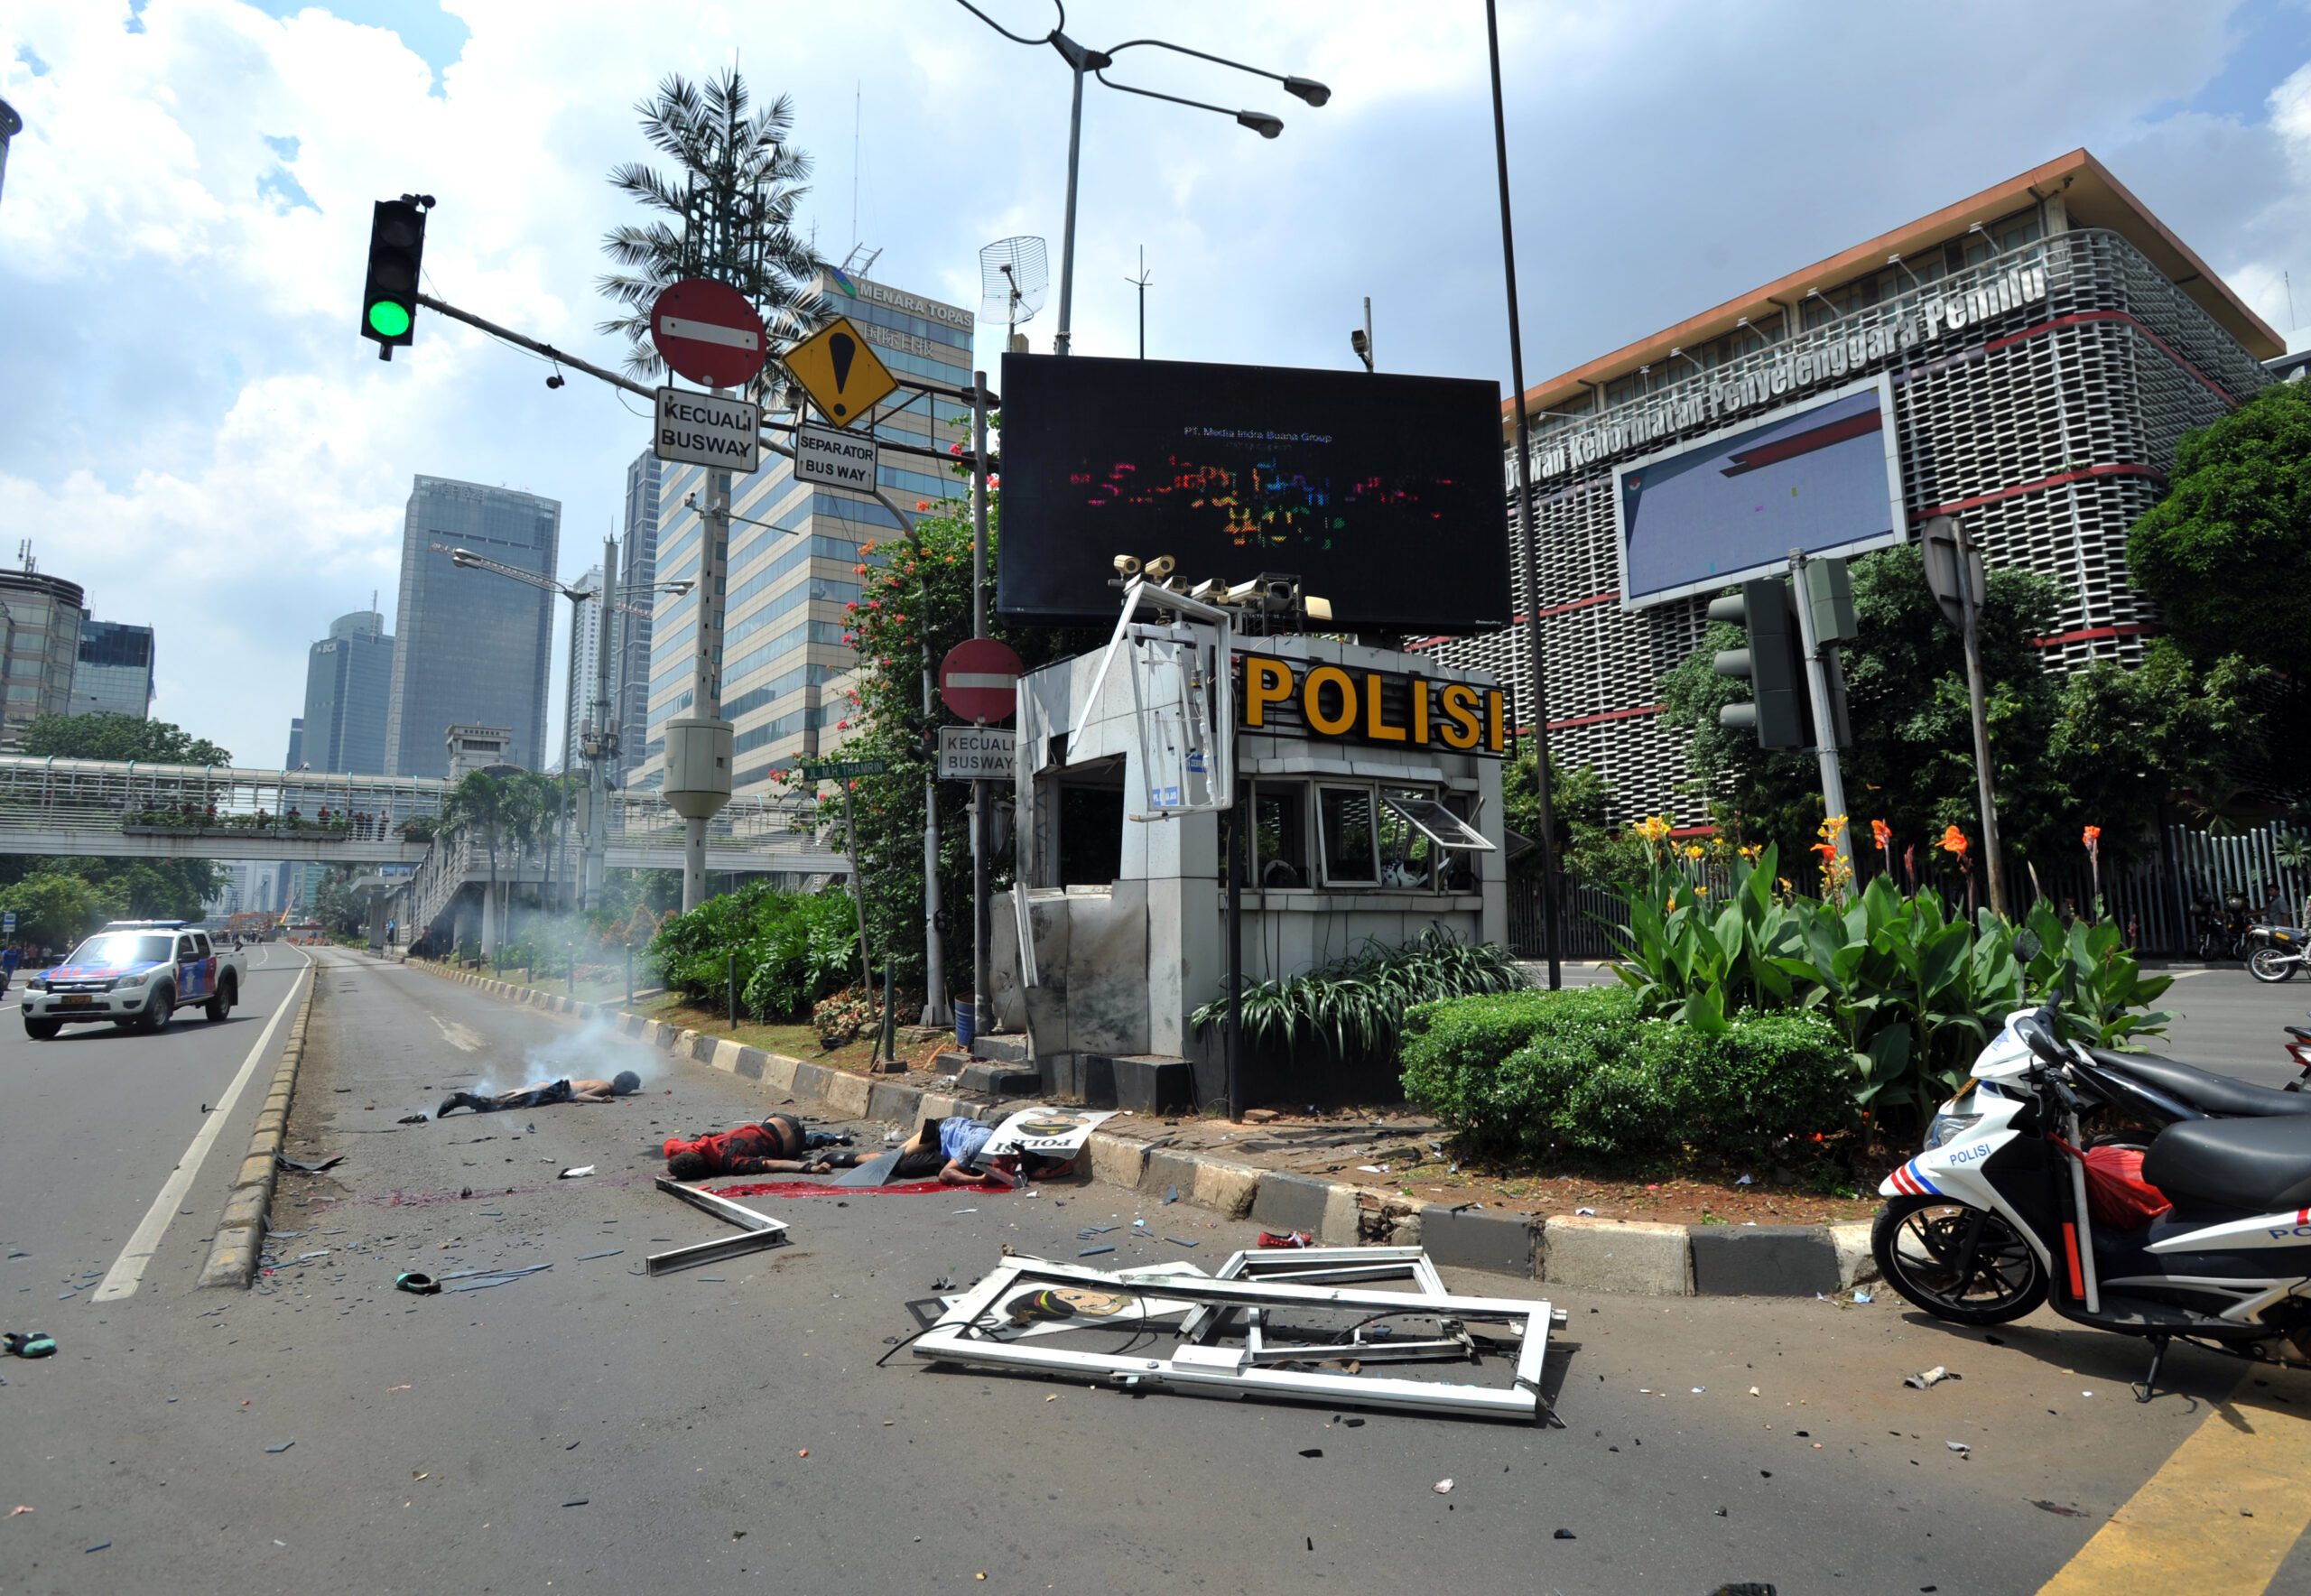 Daftar aksi dan rencana teror di Indonesia sepanjang 2016